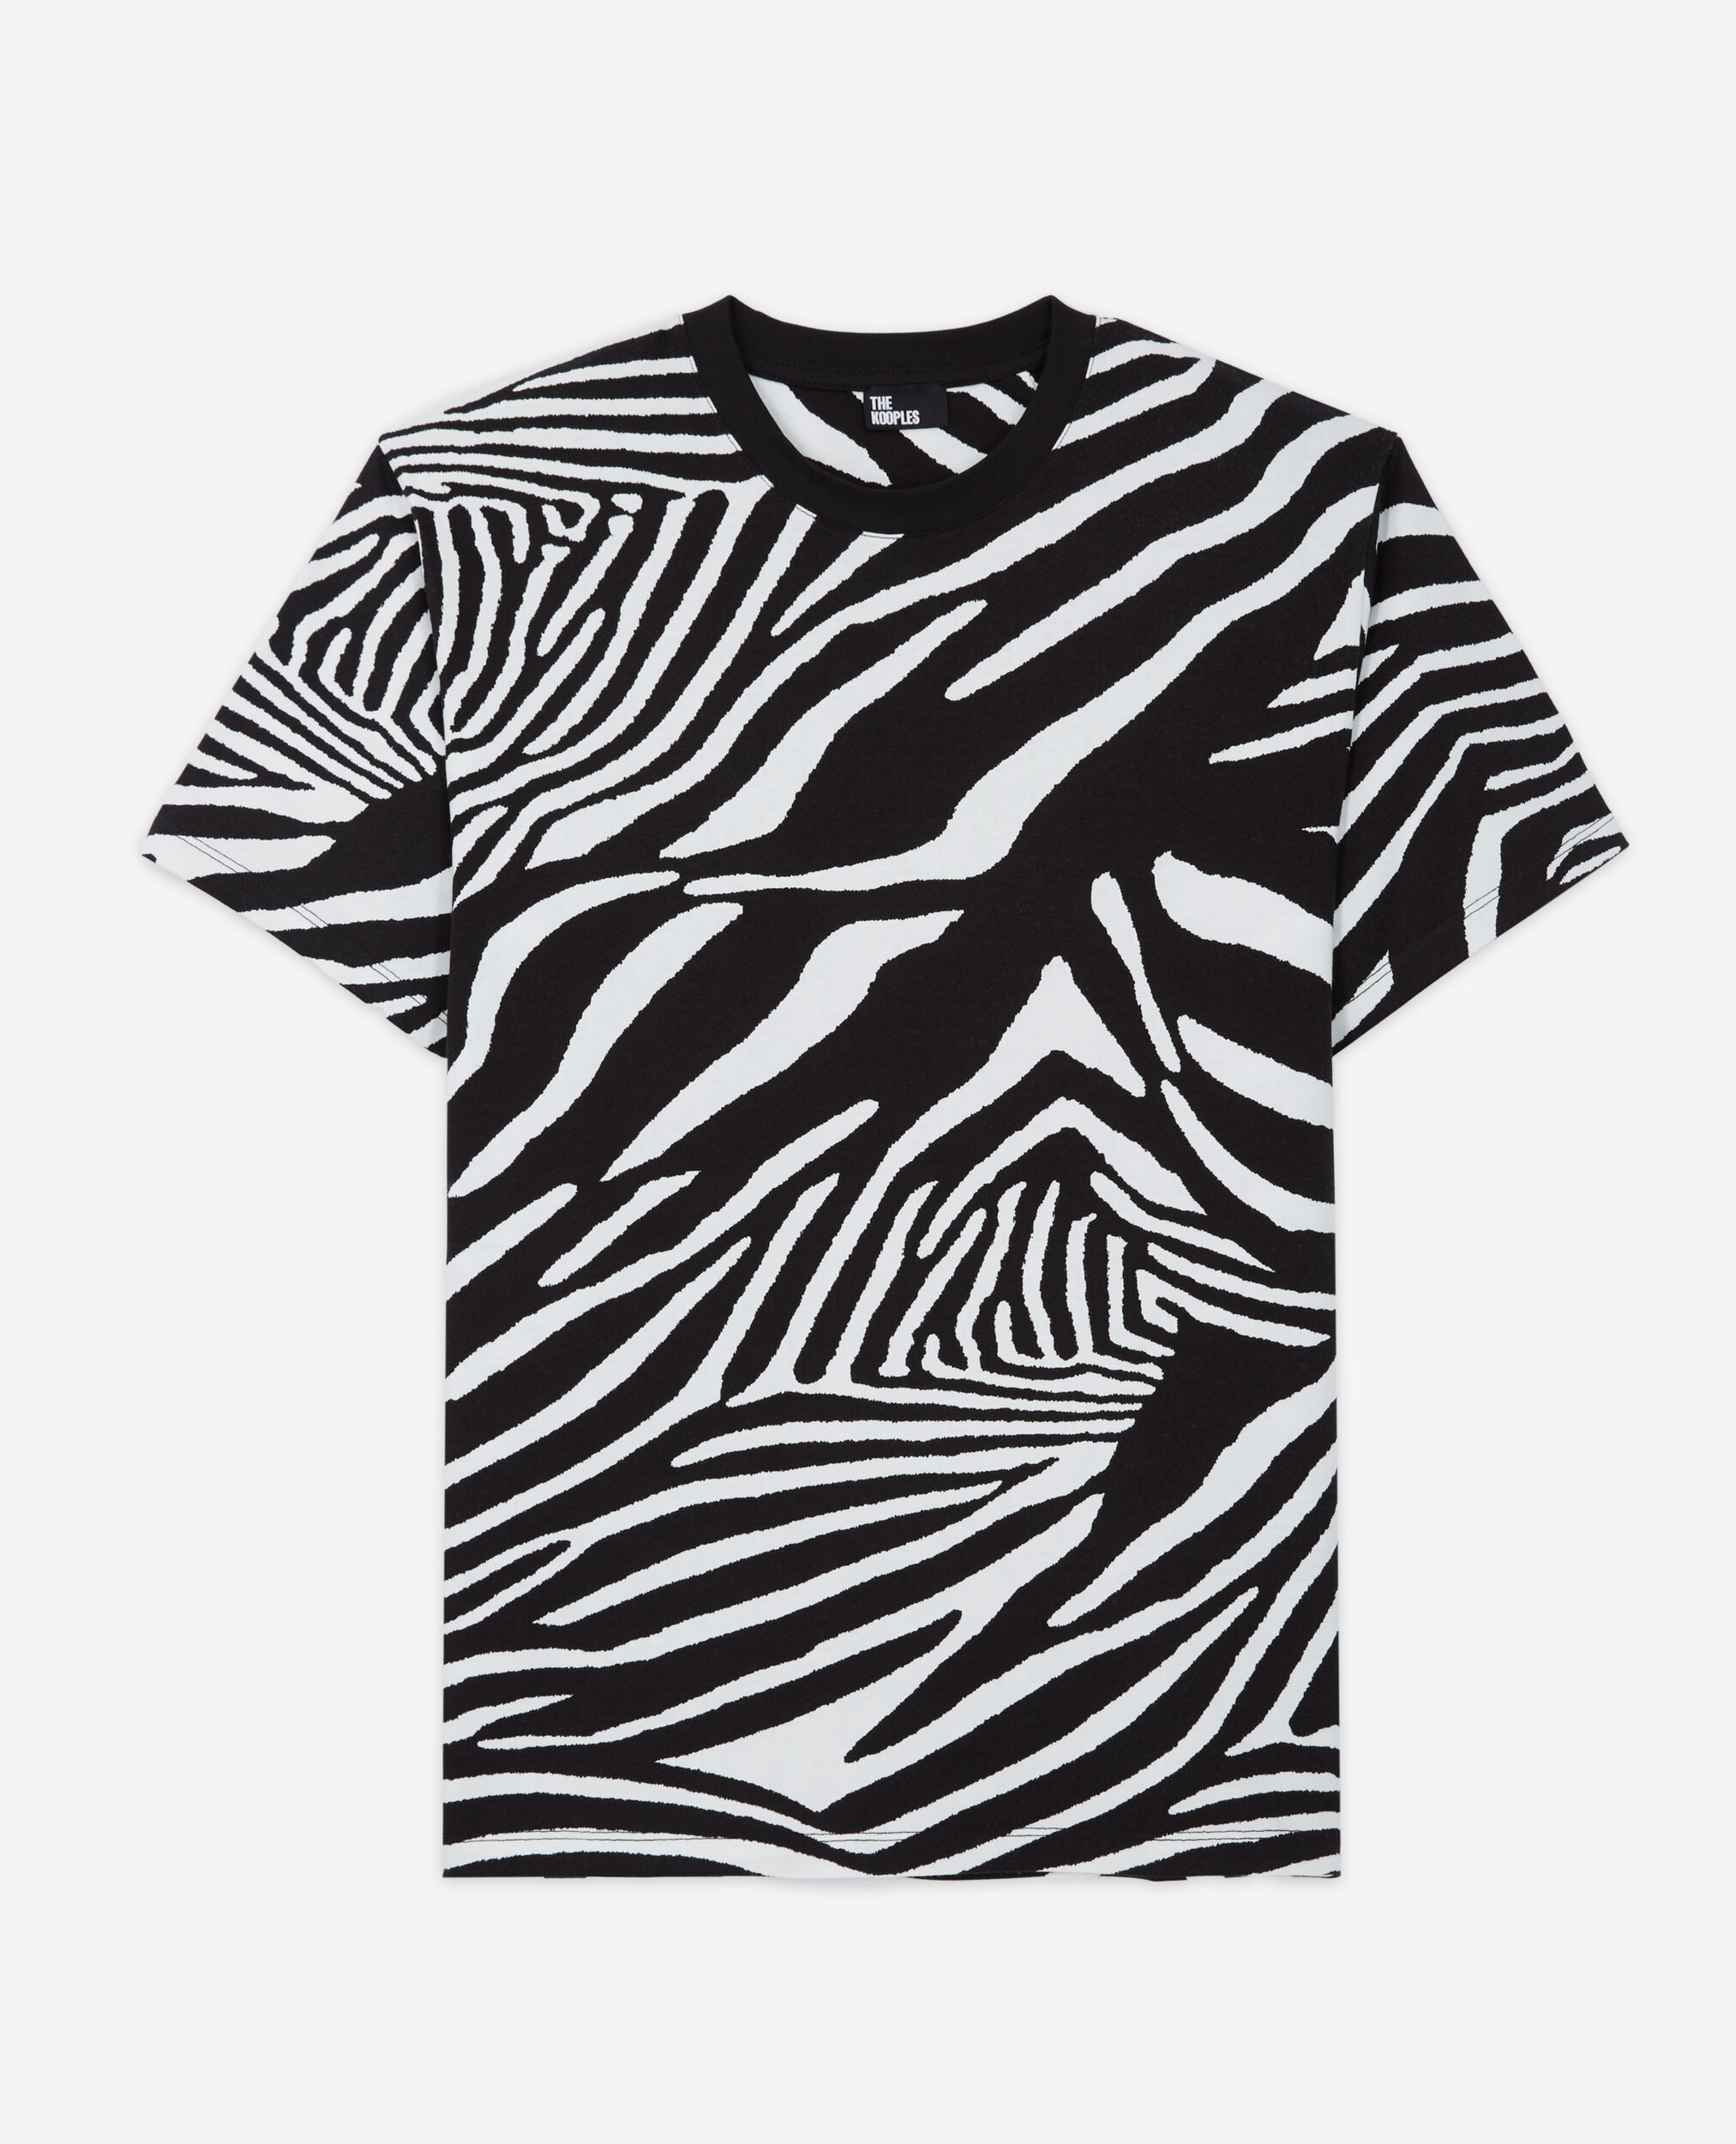 Camiseta estampado cebra para hombre, BLACK / WHITE, hi-res image number null